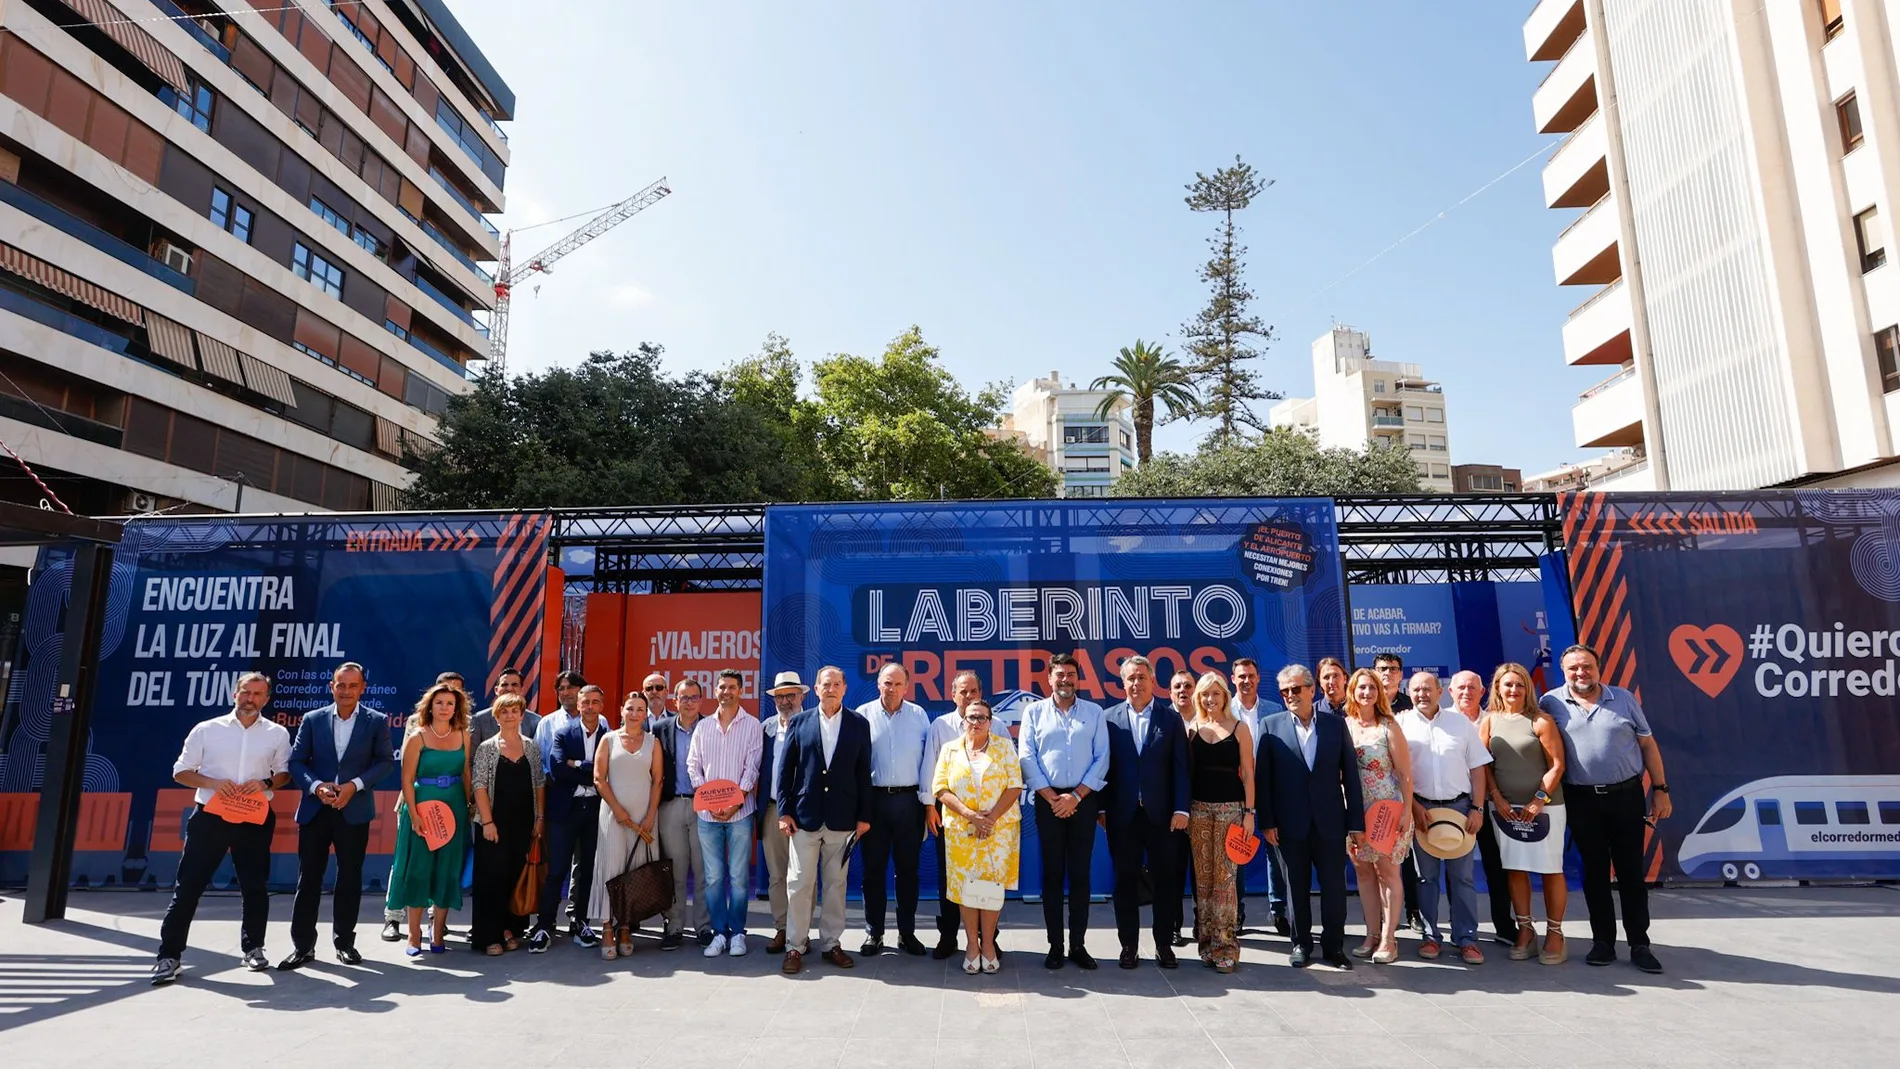  La plataforma Quiero Corredor hizo la última acción reivindicativa en Alicante